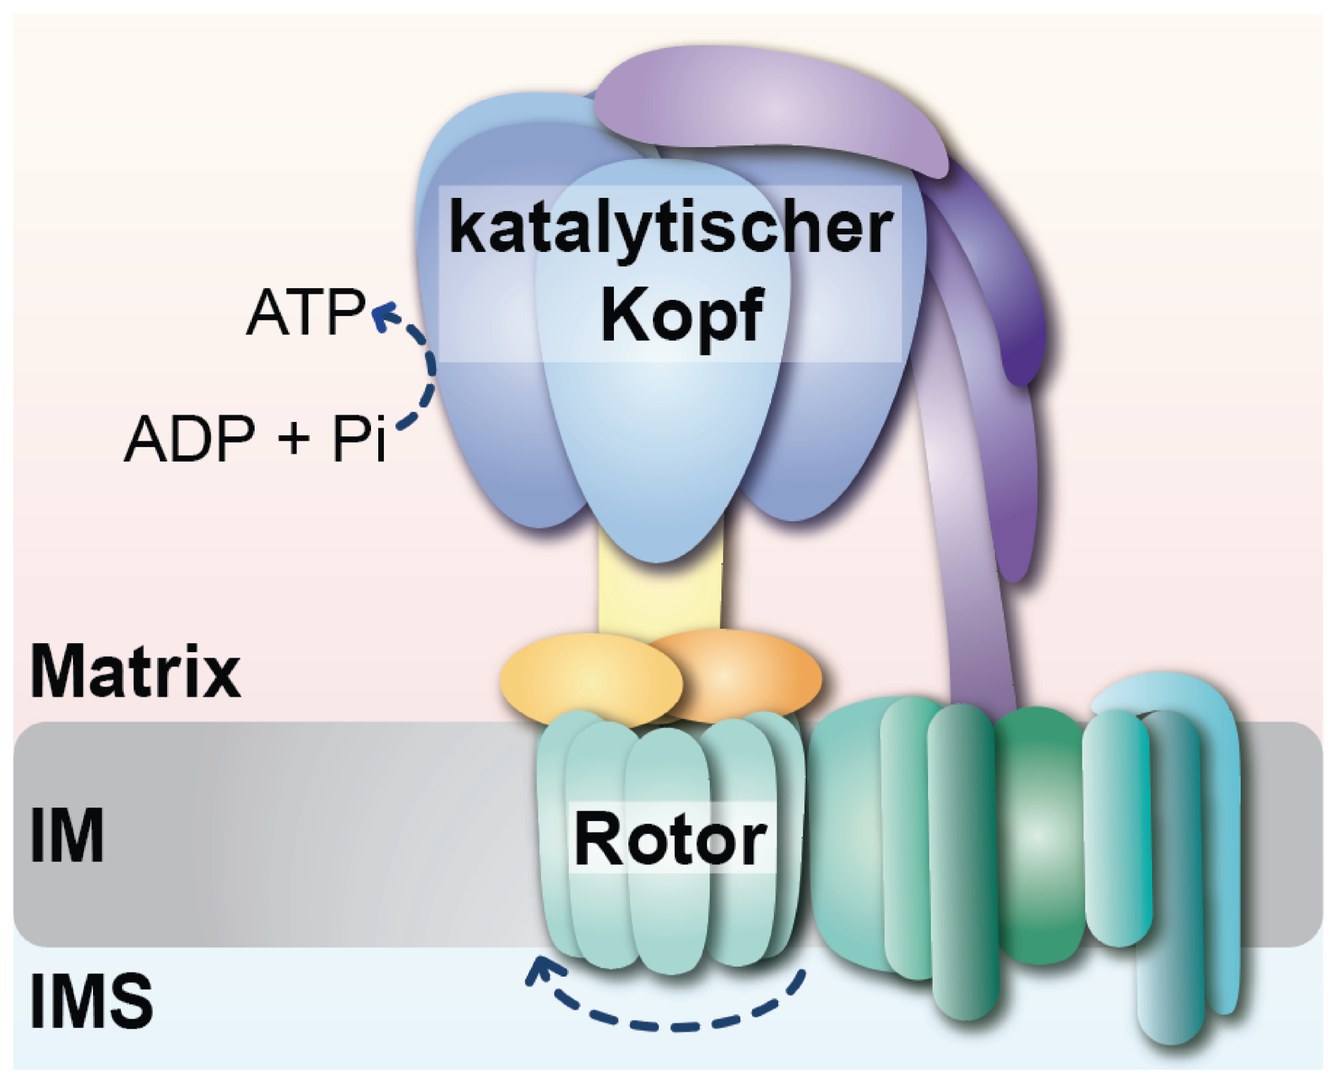 Forschende um Prof. Thomas Becker - am Universitätsklinikum Bonn (UKB) haben herausgefunden, dass das mitochondriale Hsp70 eine duale Funktion in der Bildung der ATP-Synthase ausführt: den Zusammenbau des katalytischen Kopfes und die kontrollierte Verknüpfung des Kopfes mit dem Stator.